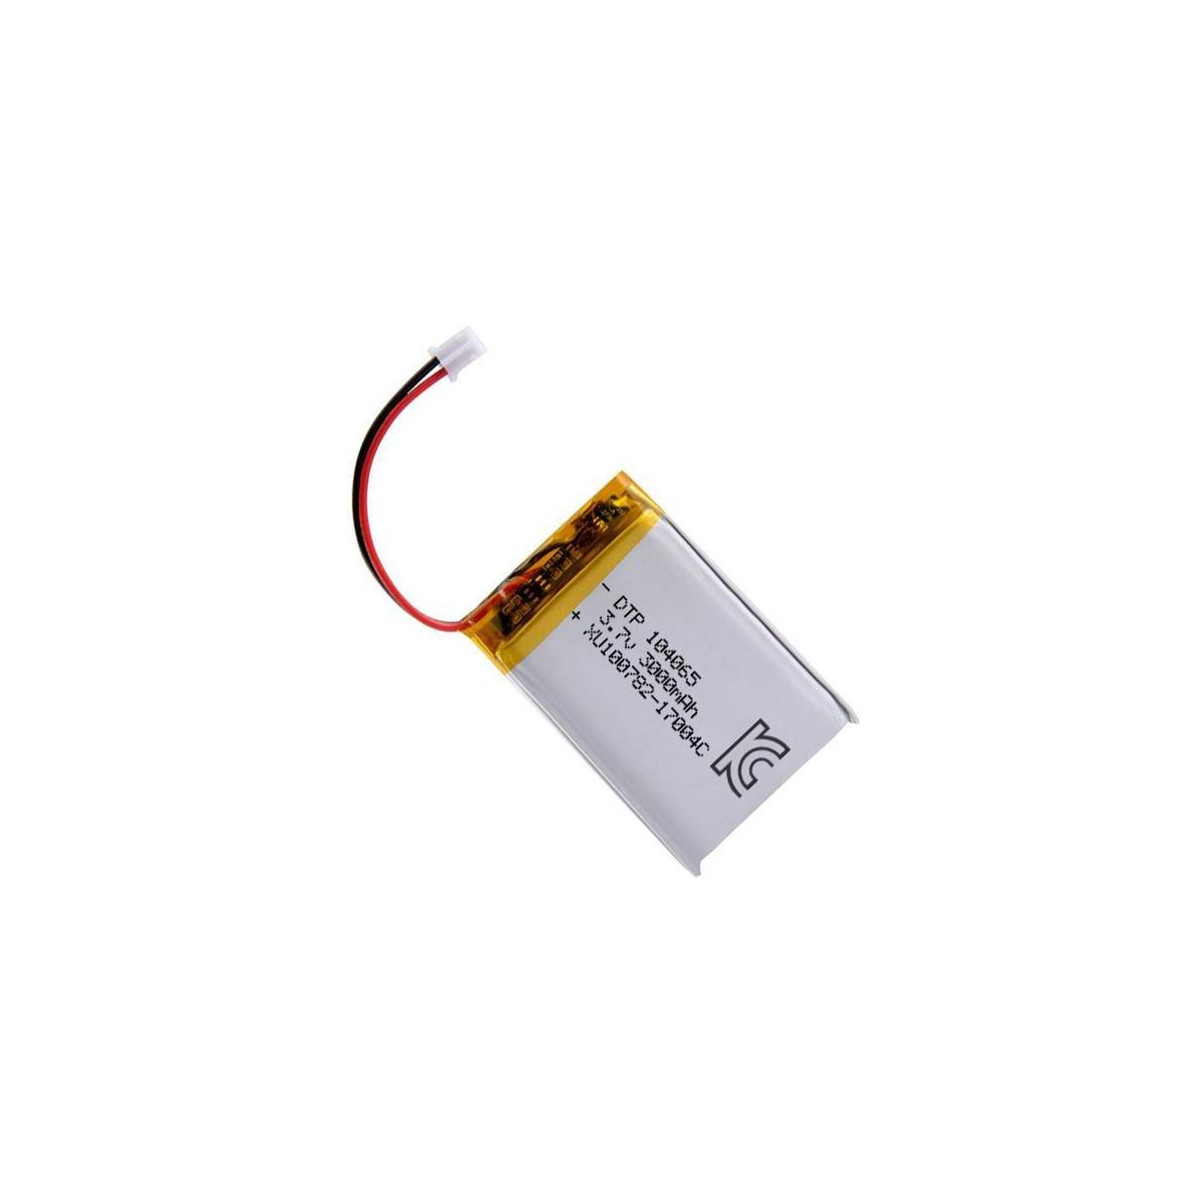 More about Baterie nabíjecí LiPo 3,7V/3000mAh 104065 Hadex